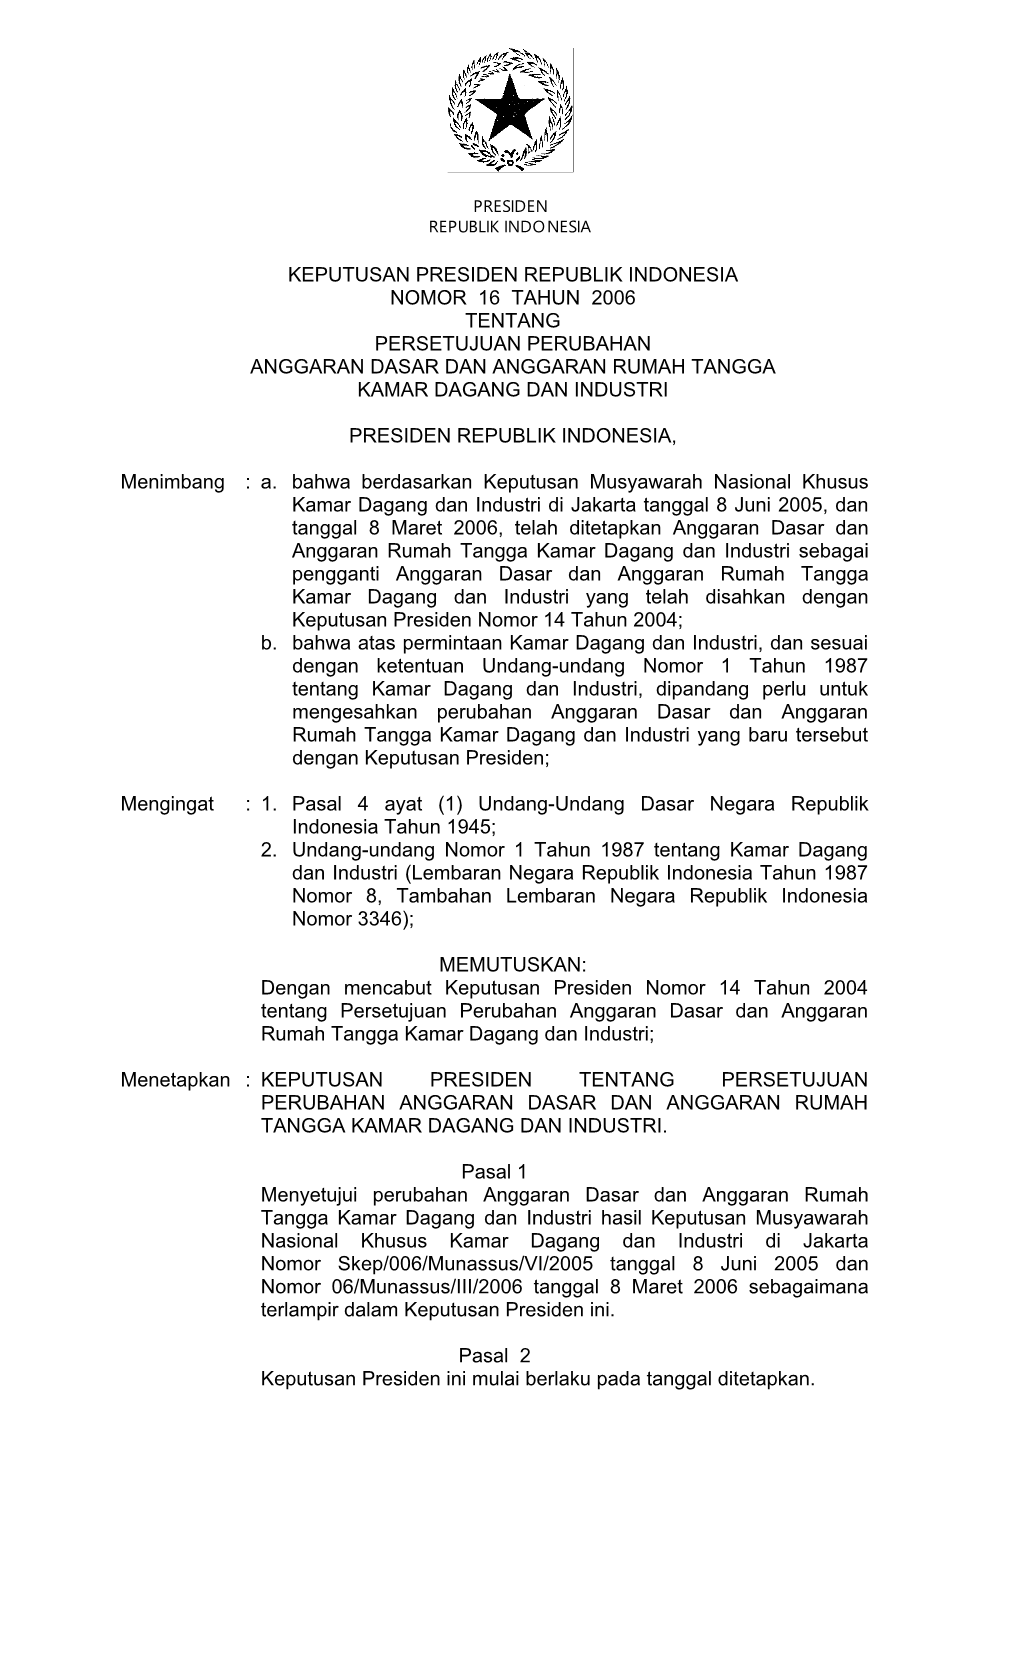 Keputusan Presiden Republik Indonesia Nomor 16 Tahun 2006 Tentang Persetujuan Perubahan Anggaran Dasar Dan Anggaran Rumah Tangga Kamar Dagang Dan Industri